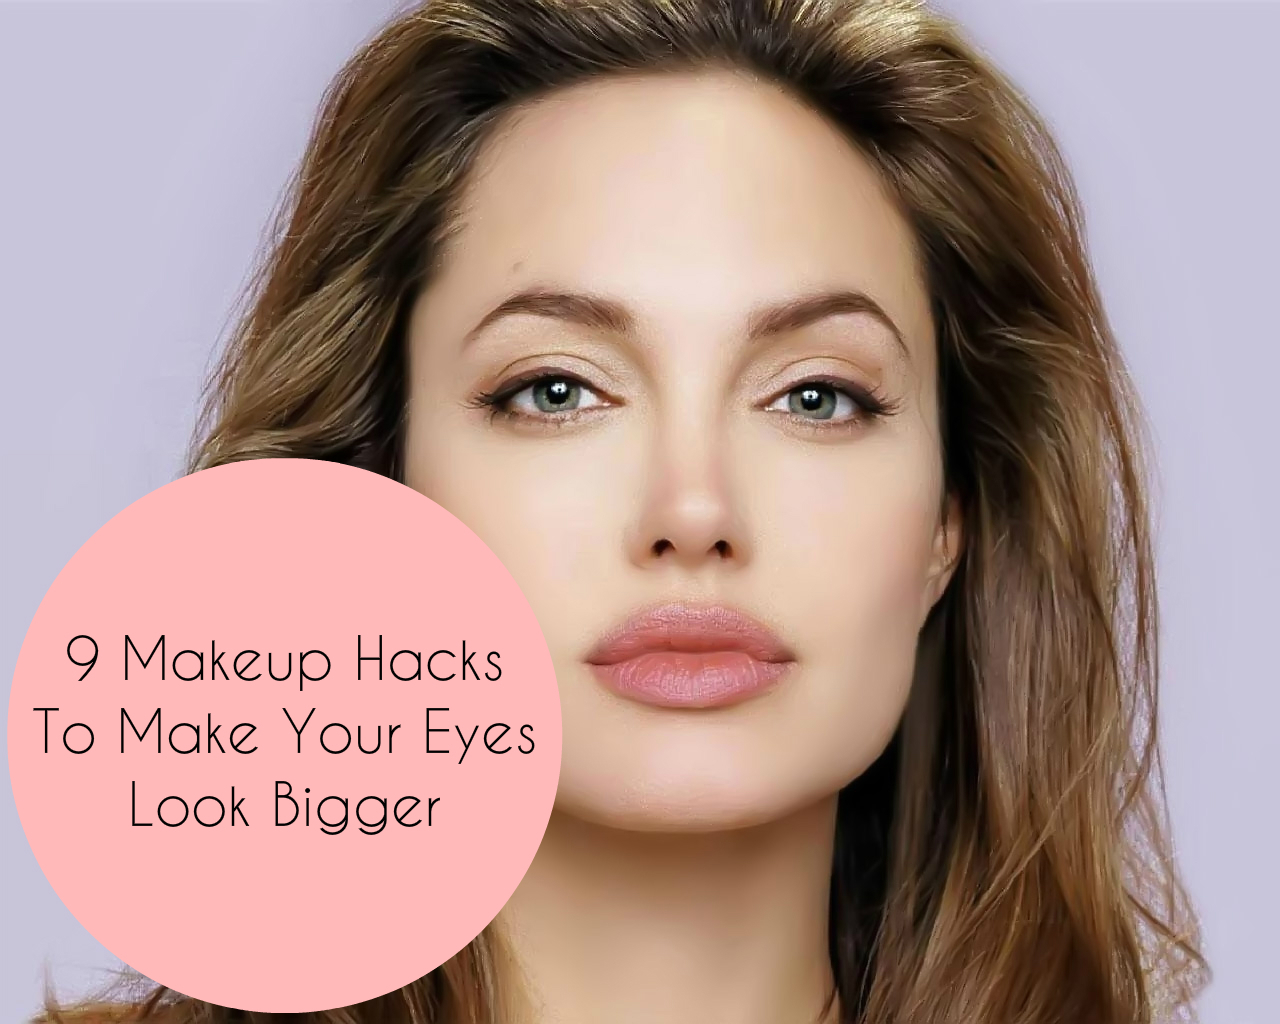 Eye Makeup To Make Small Eyes Look Bigger 9 Makeup Hacks To Make Your Eyes Look Bigger